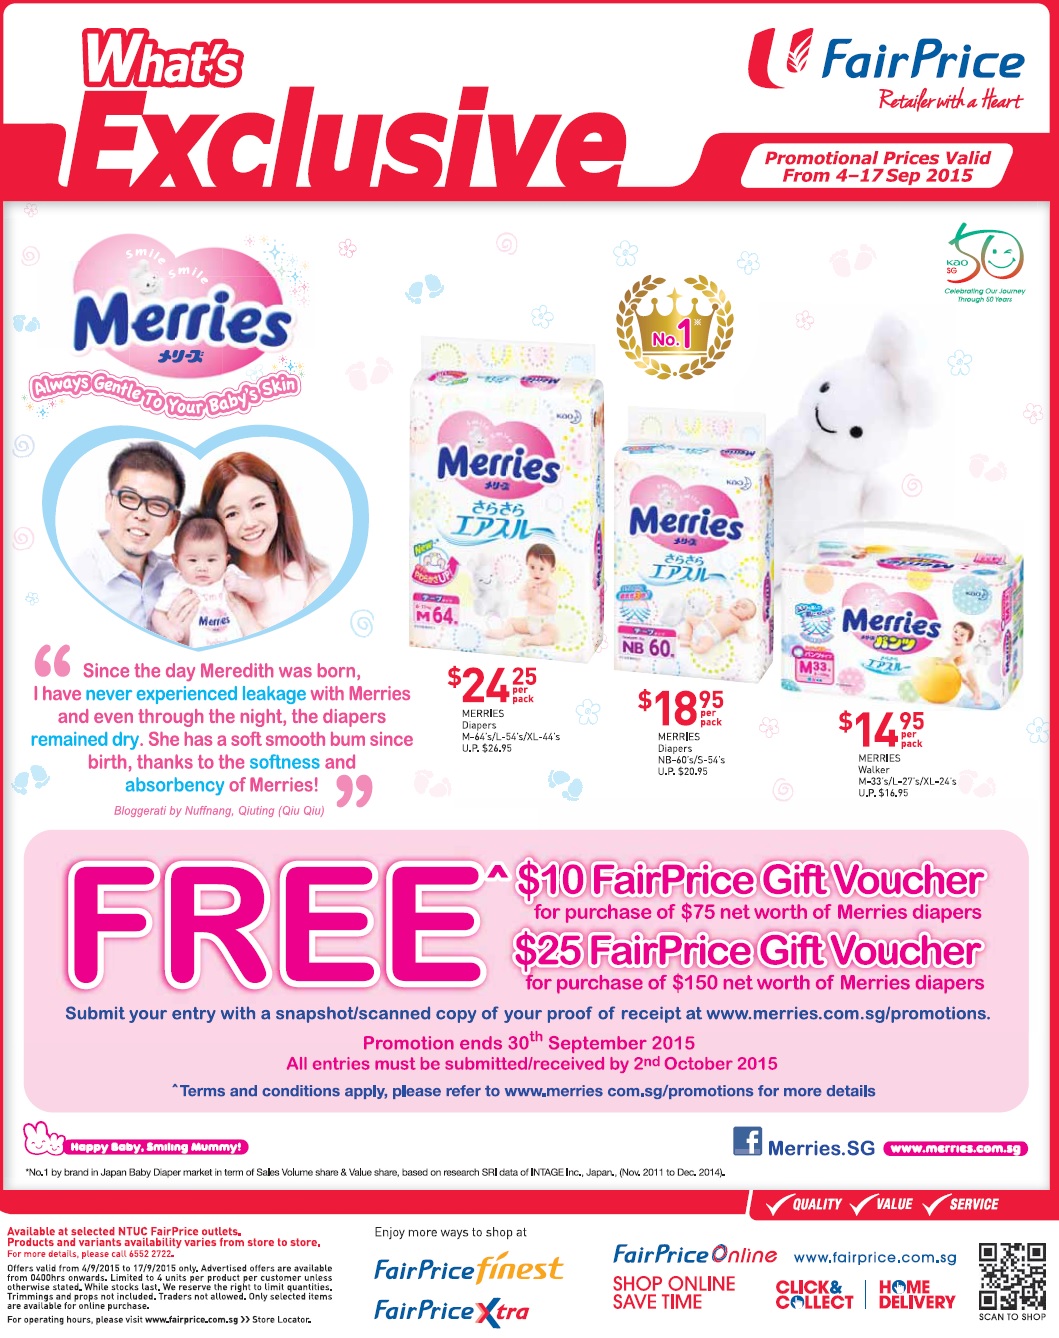 新加坡母婴产品奶粉纸尿裤婴儿车促销信息